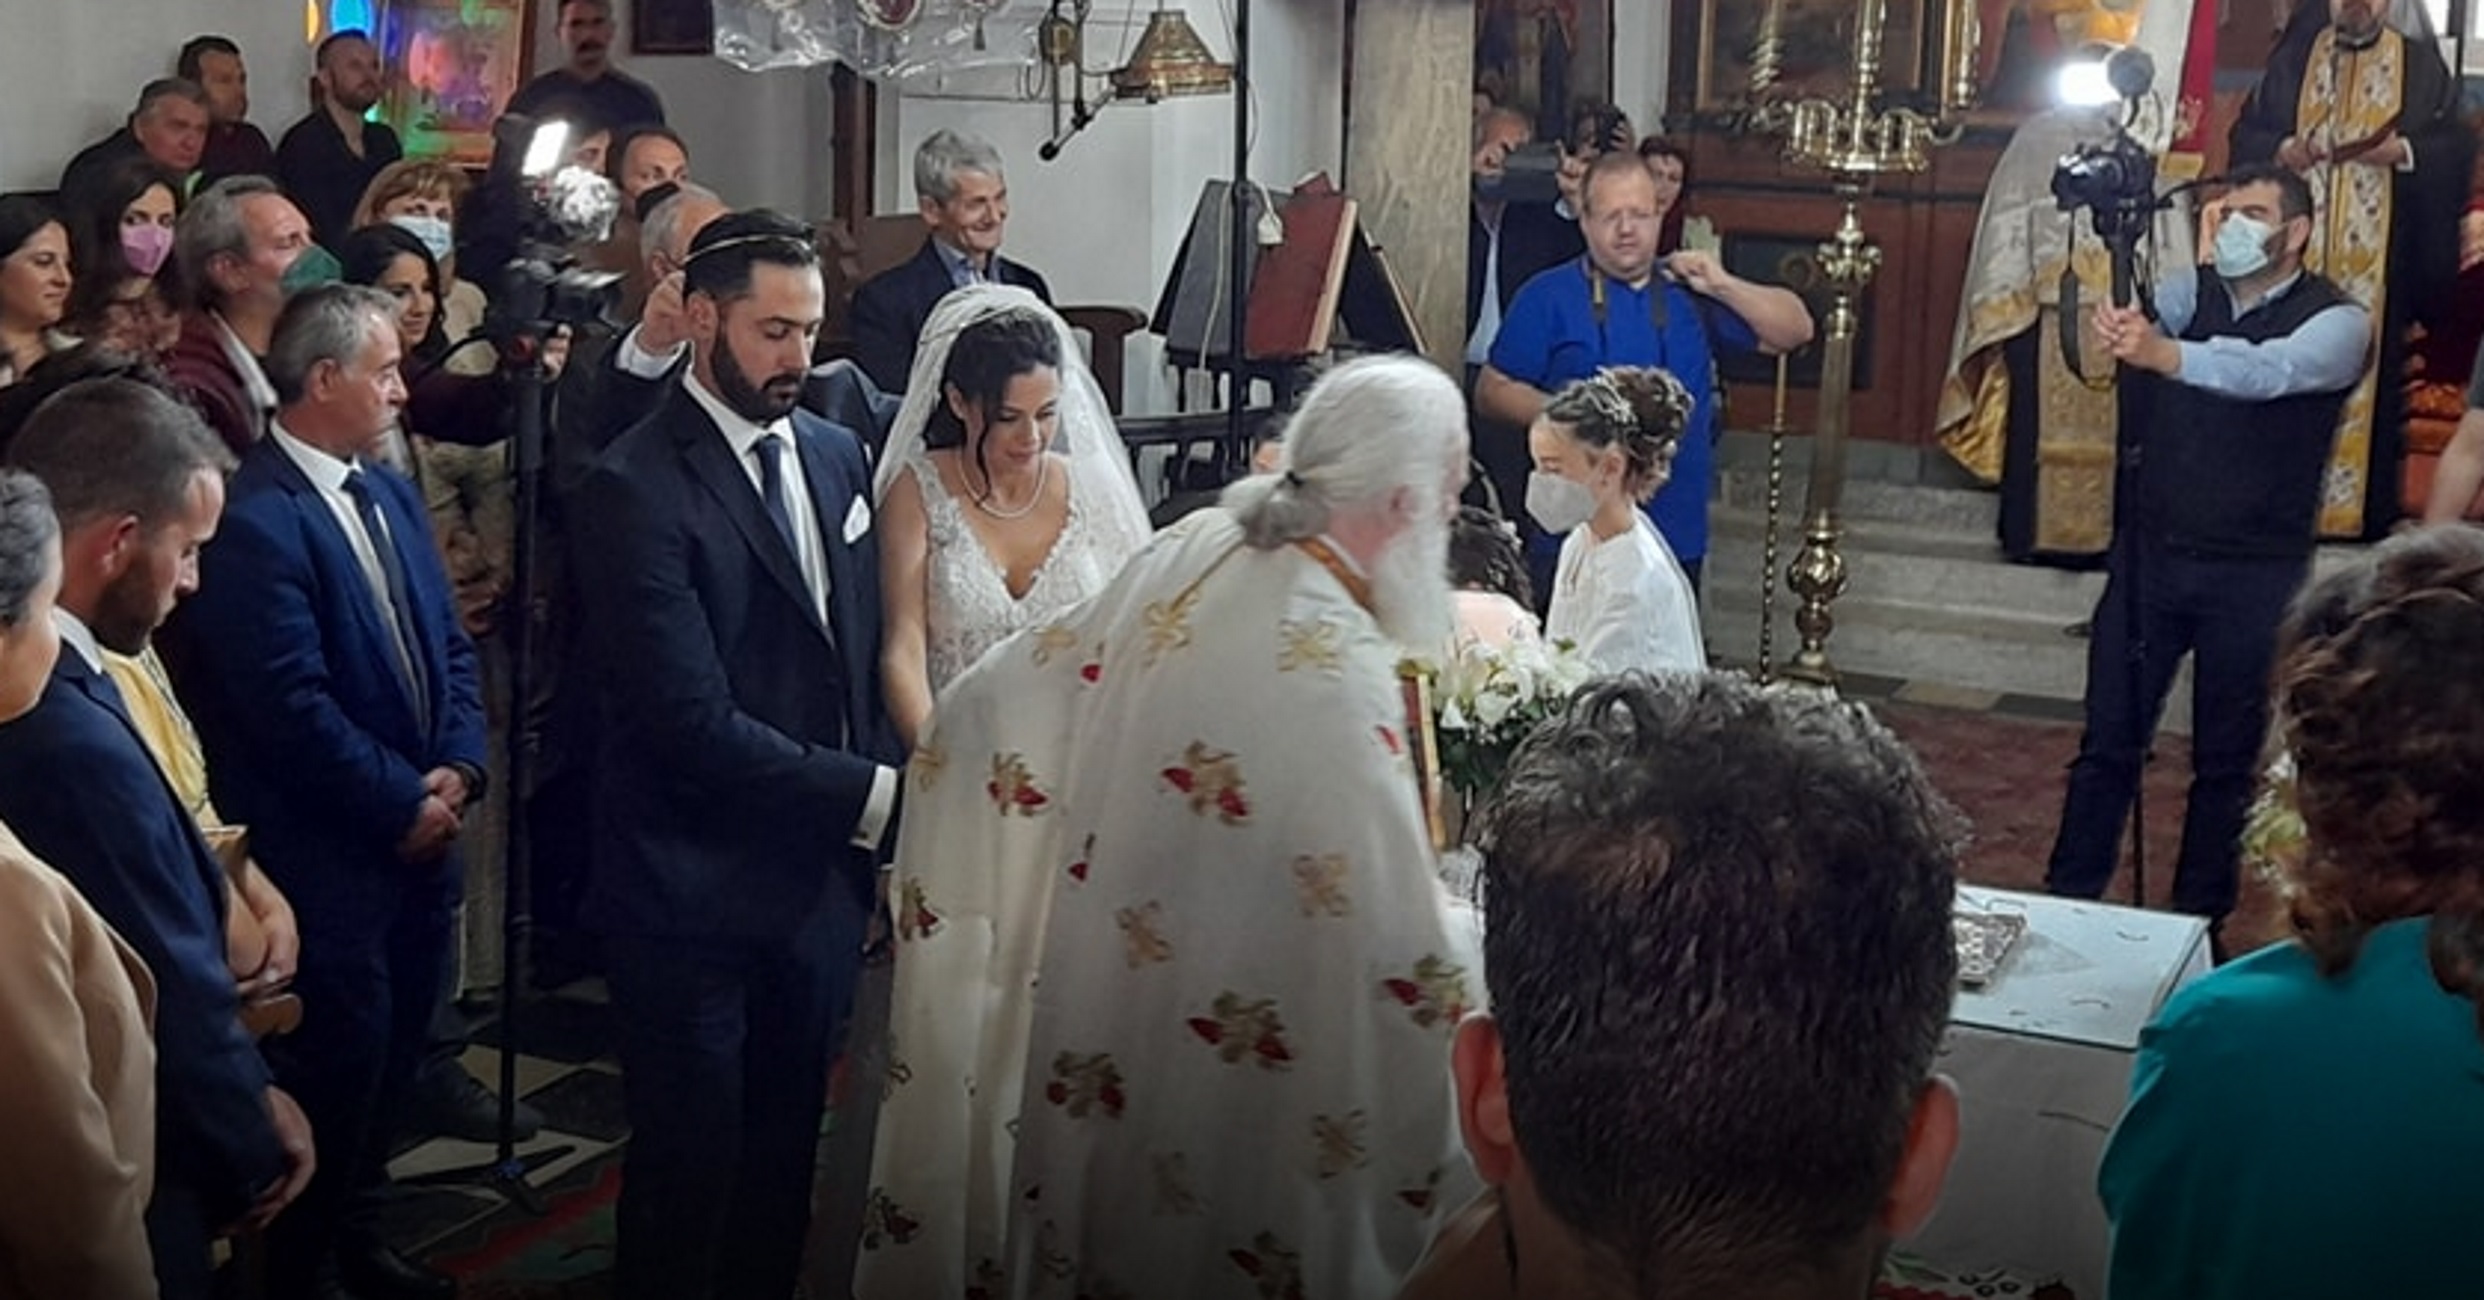 Αμοργός: Παραμυθένιος γάμος με γαμπρό τον Δημήτρη Σκοπελίτη – Η εκλεκτή της καρδιάς του